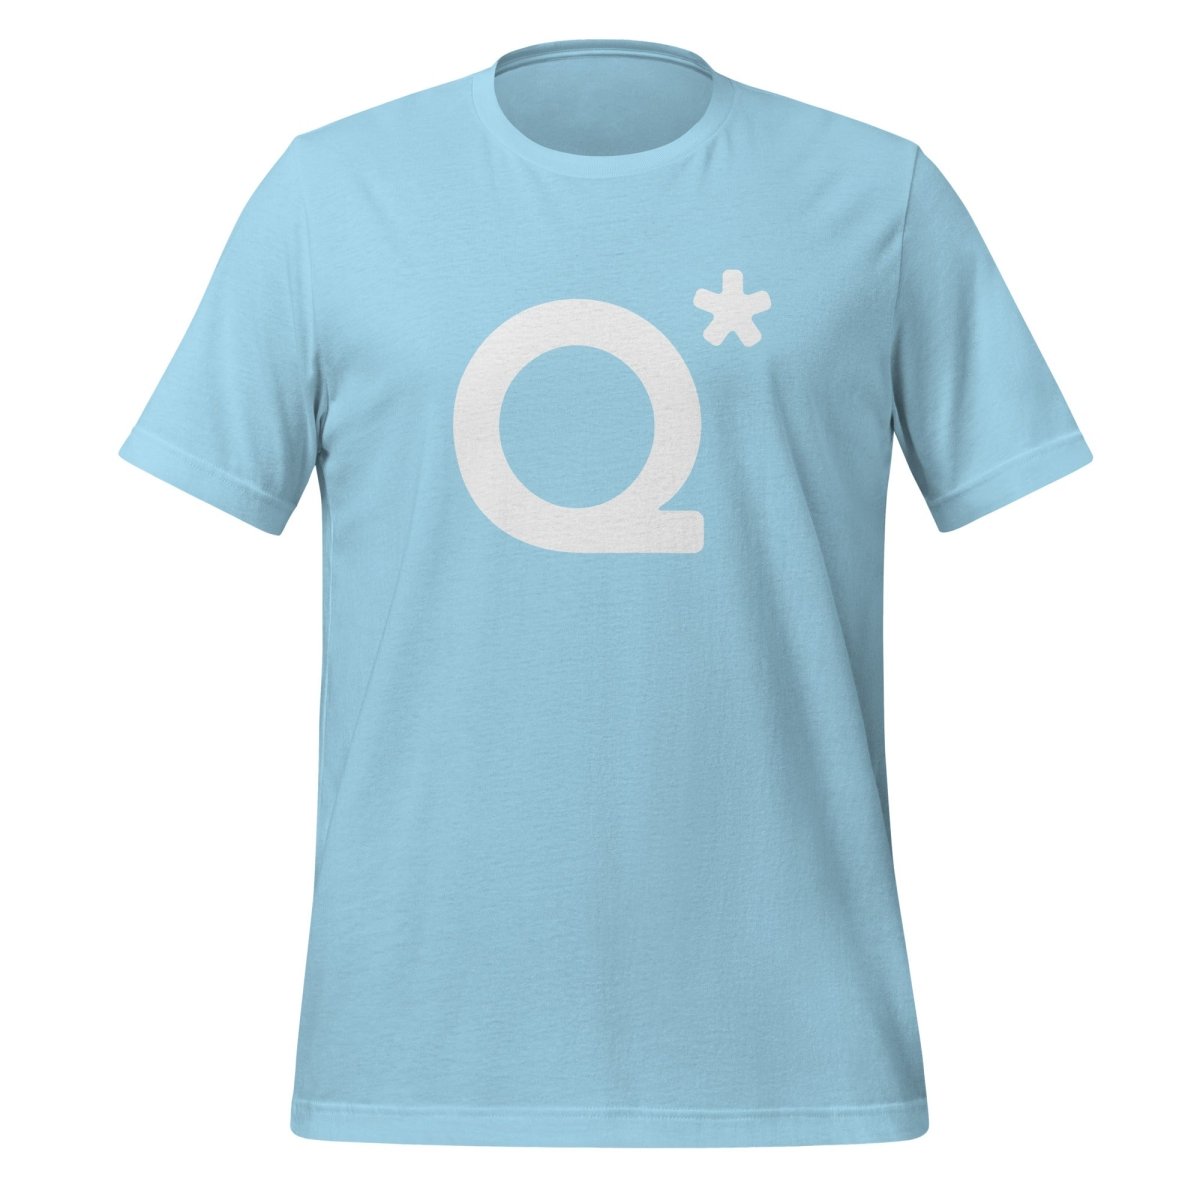 Q* (Q - Star) T - Shirt 1 (unisex) - Ocean Blue - AI Store